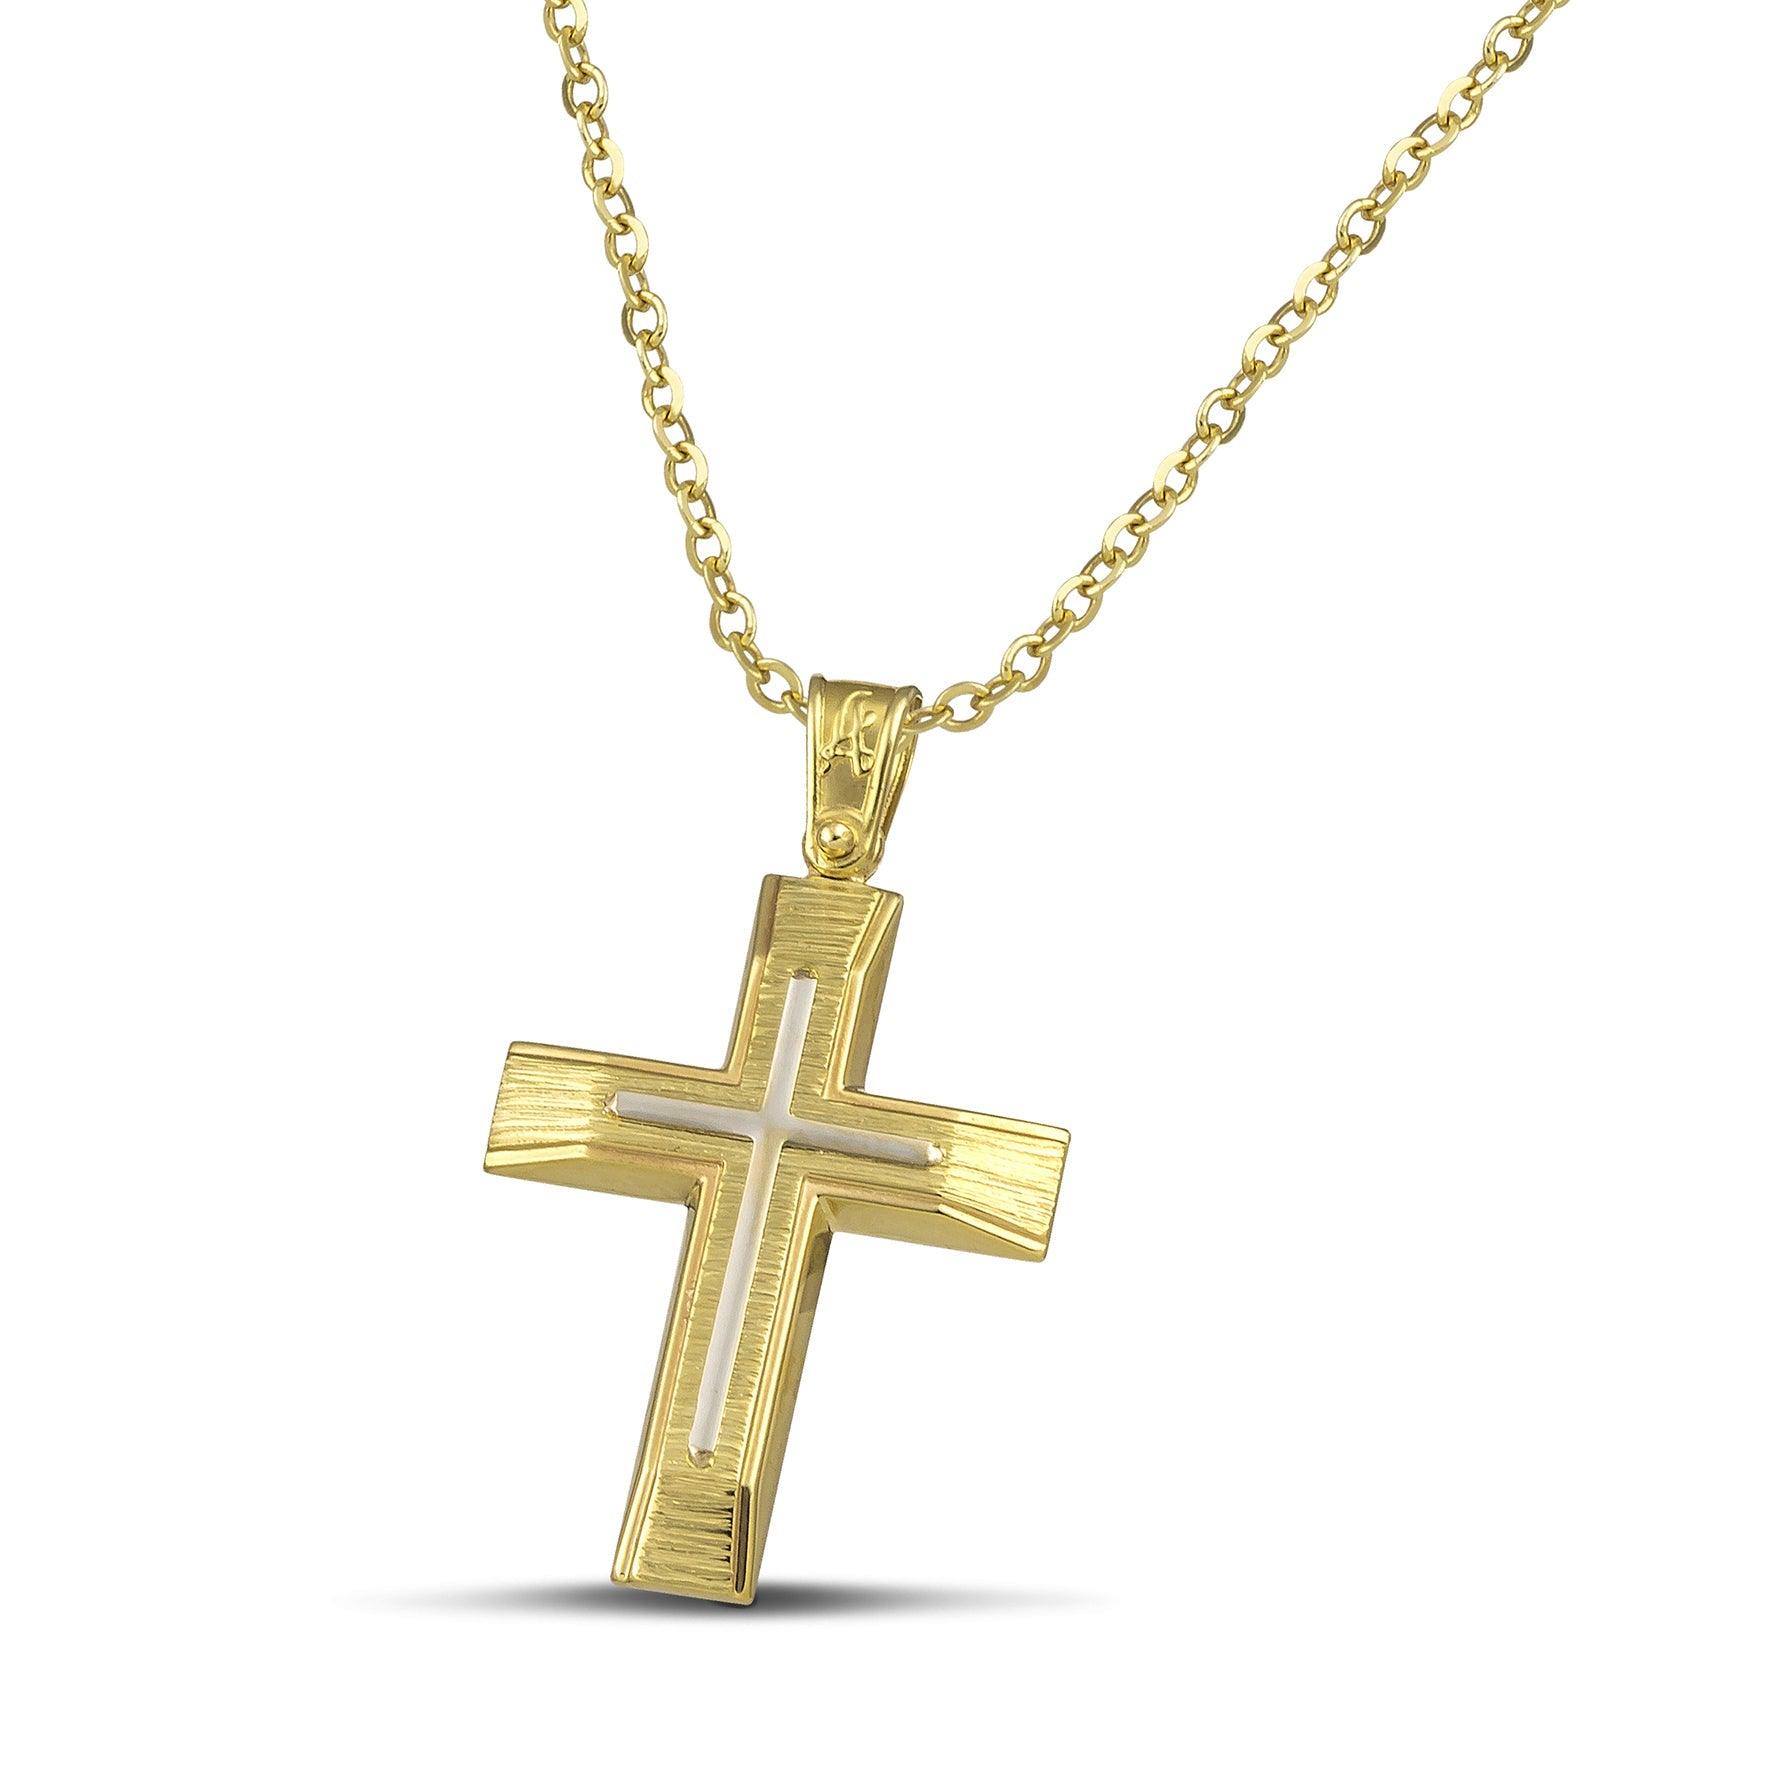 Χρυσός βαφτιστικός σταυρός Κ14 για άντρα με λευκόχρυσο σαγρέ, σε λεπτή αλυσίδα.